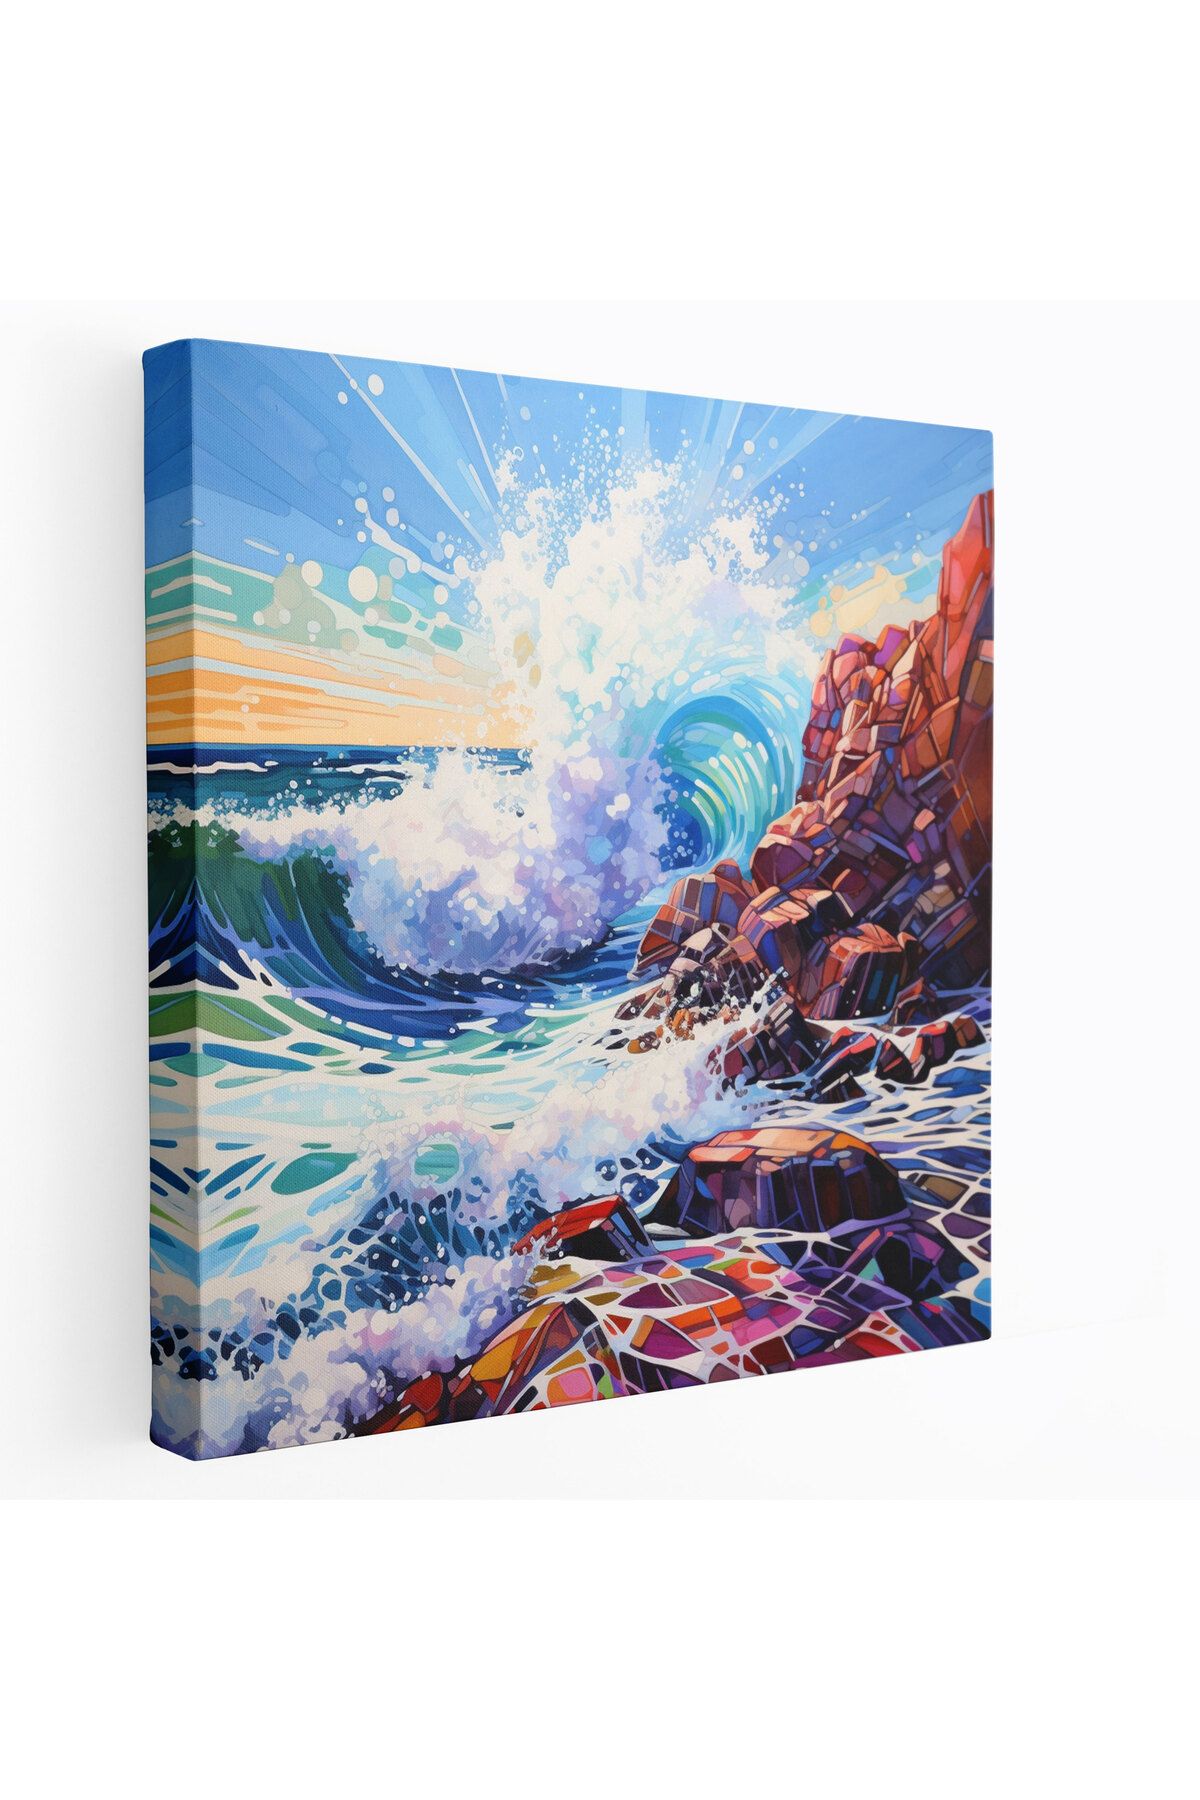 PaintedAnarchy Seascape Kanvas Tablosu, kayalara çarpan dalgalar, deniz manzarası, ev dekorasyonu, tuval